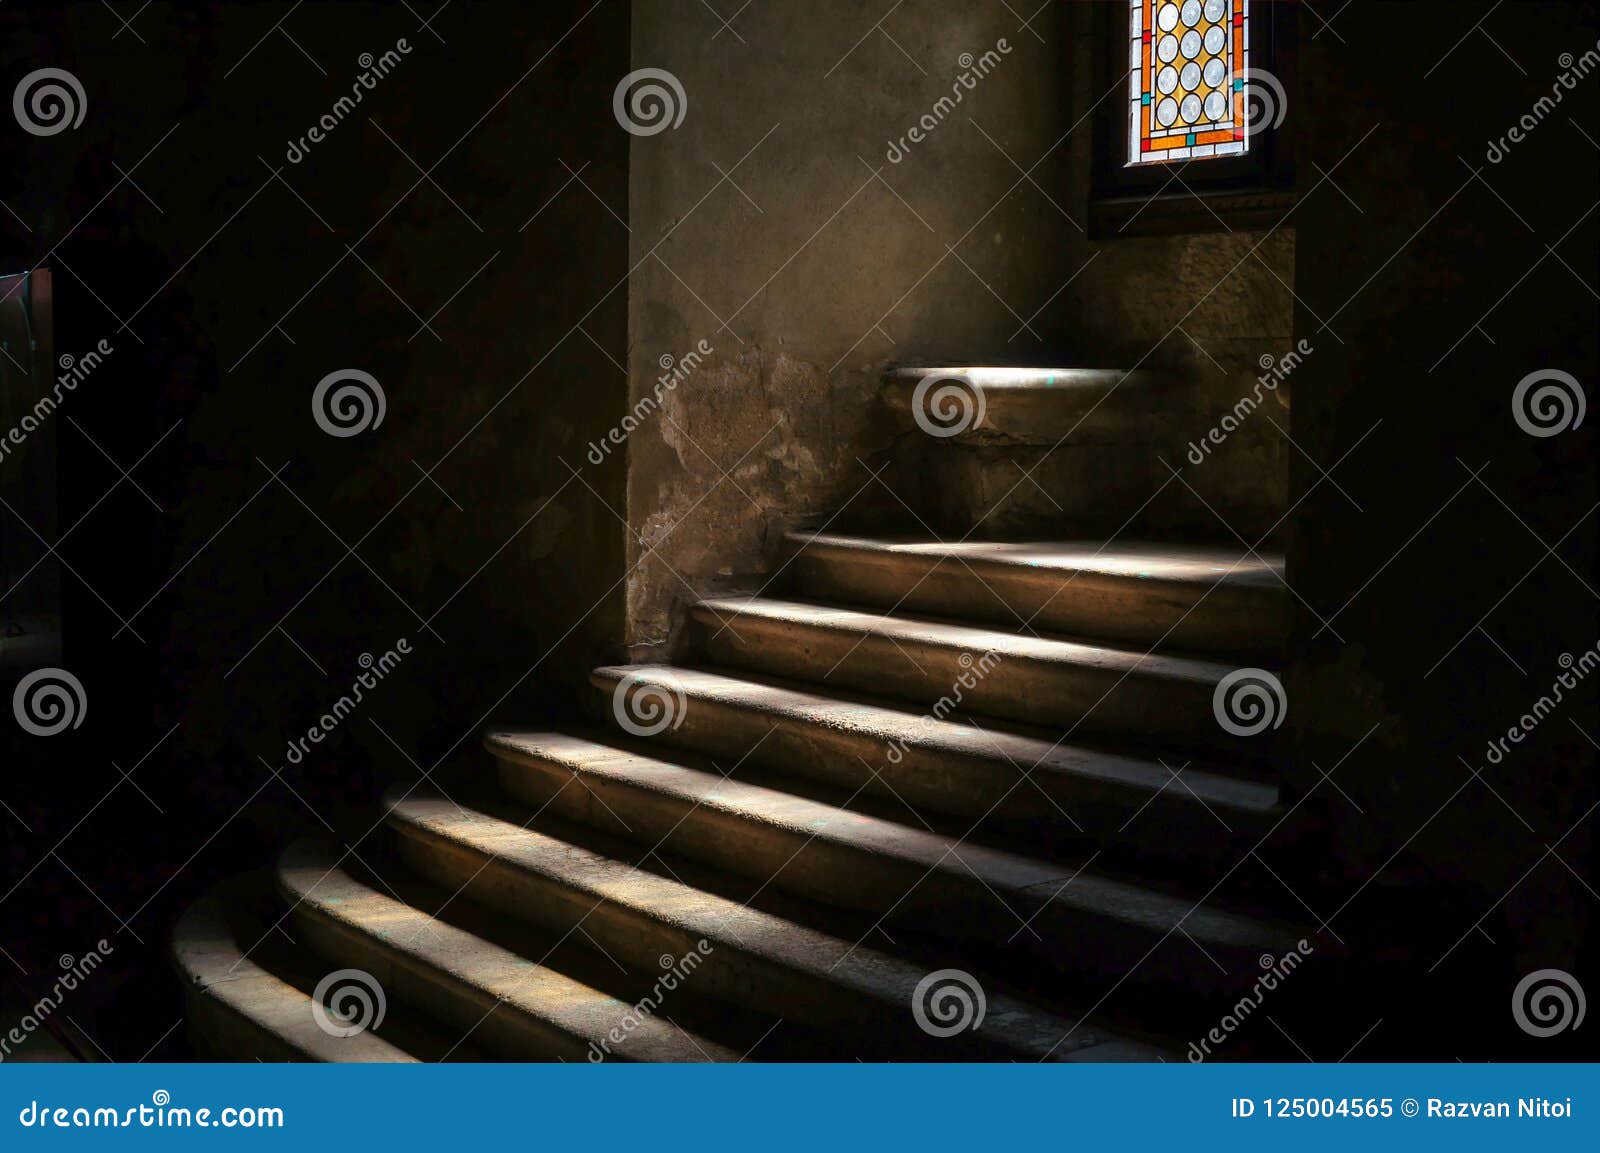 stone stairway in dark medieval castle dungeon